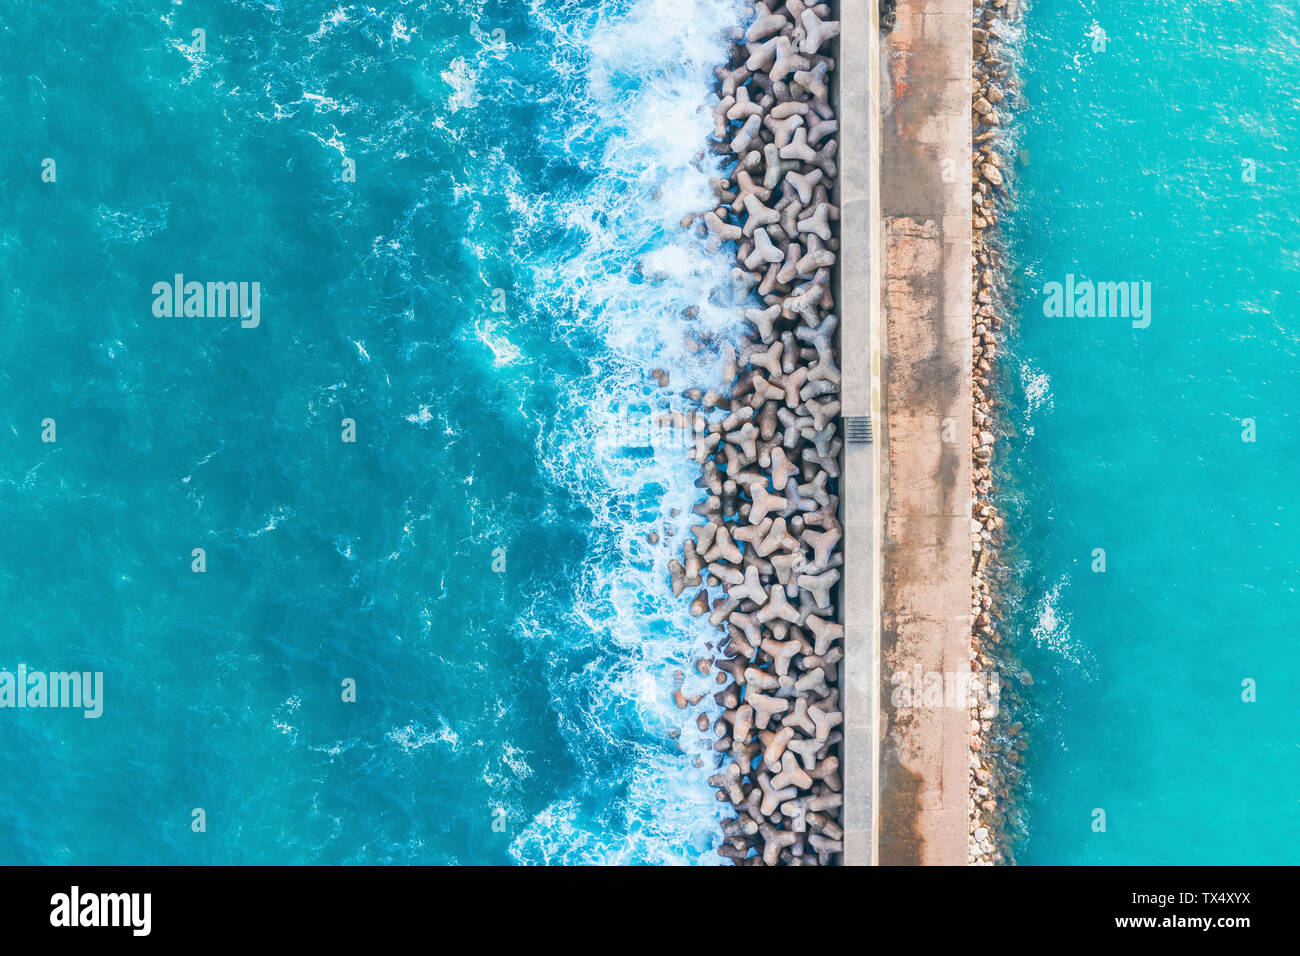 Portugal, Algarve, Lagos, port, vue aérienne des tétrapodes la protection des côtes Banque D'Images